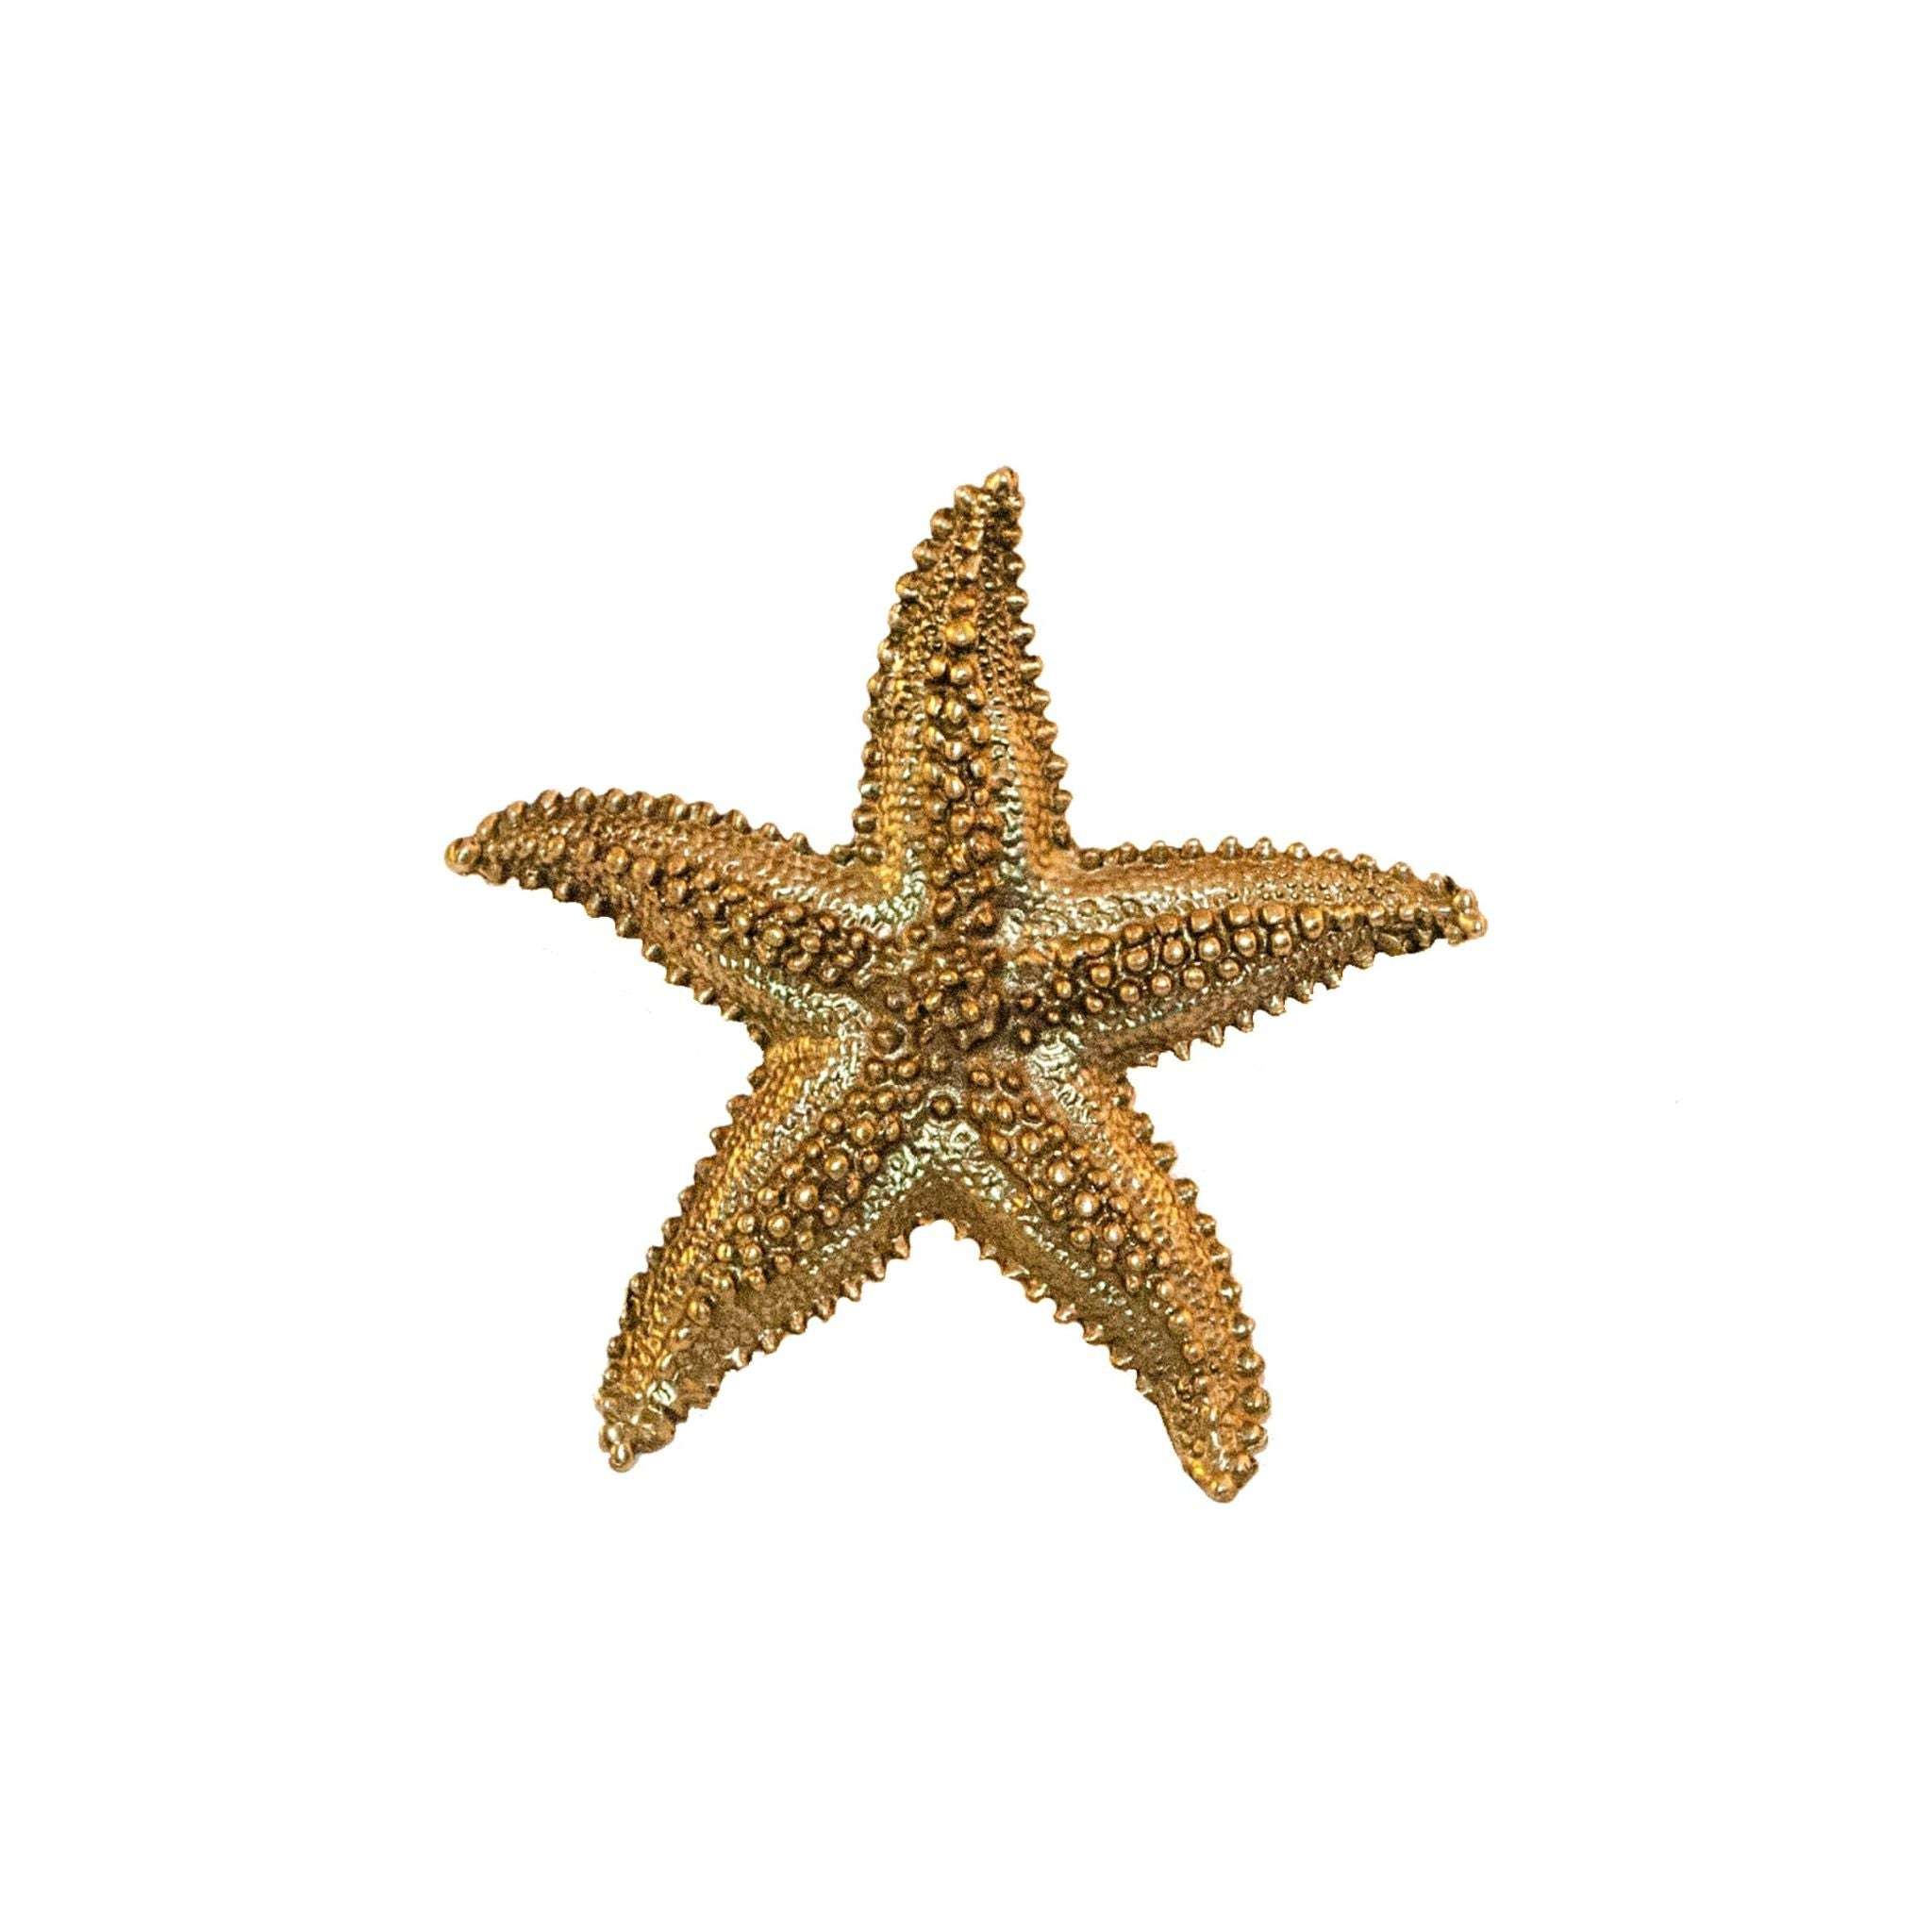 Stella marina in ottone pomello con punti - ilbronzetto